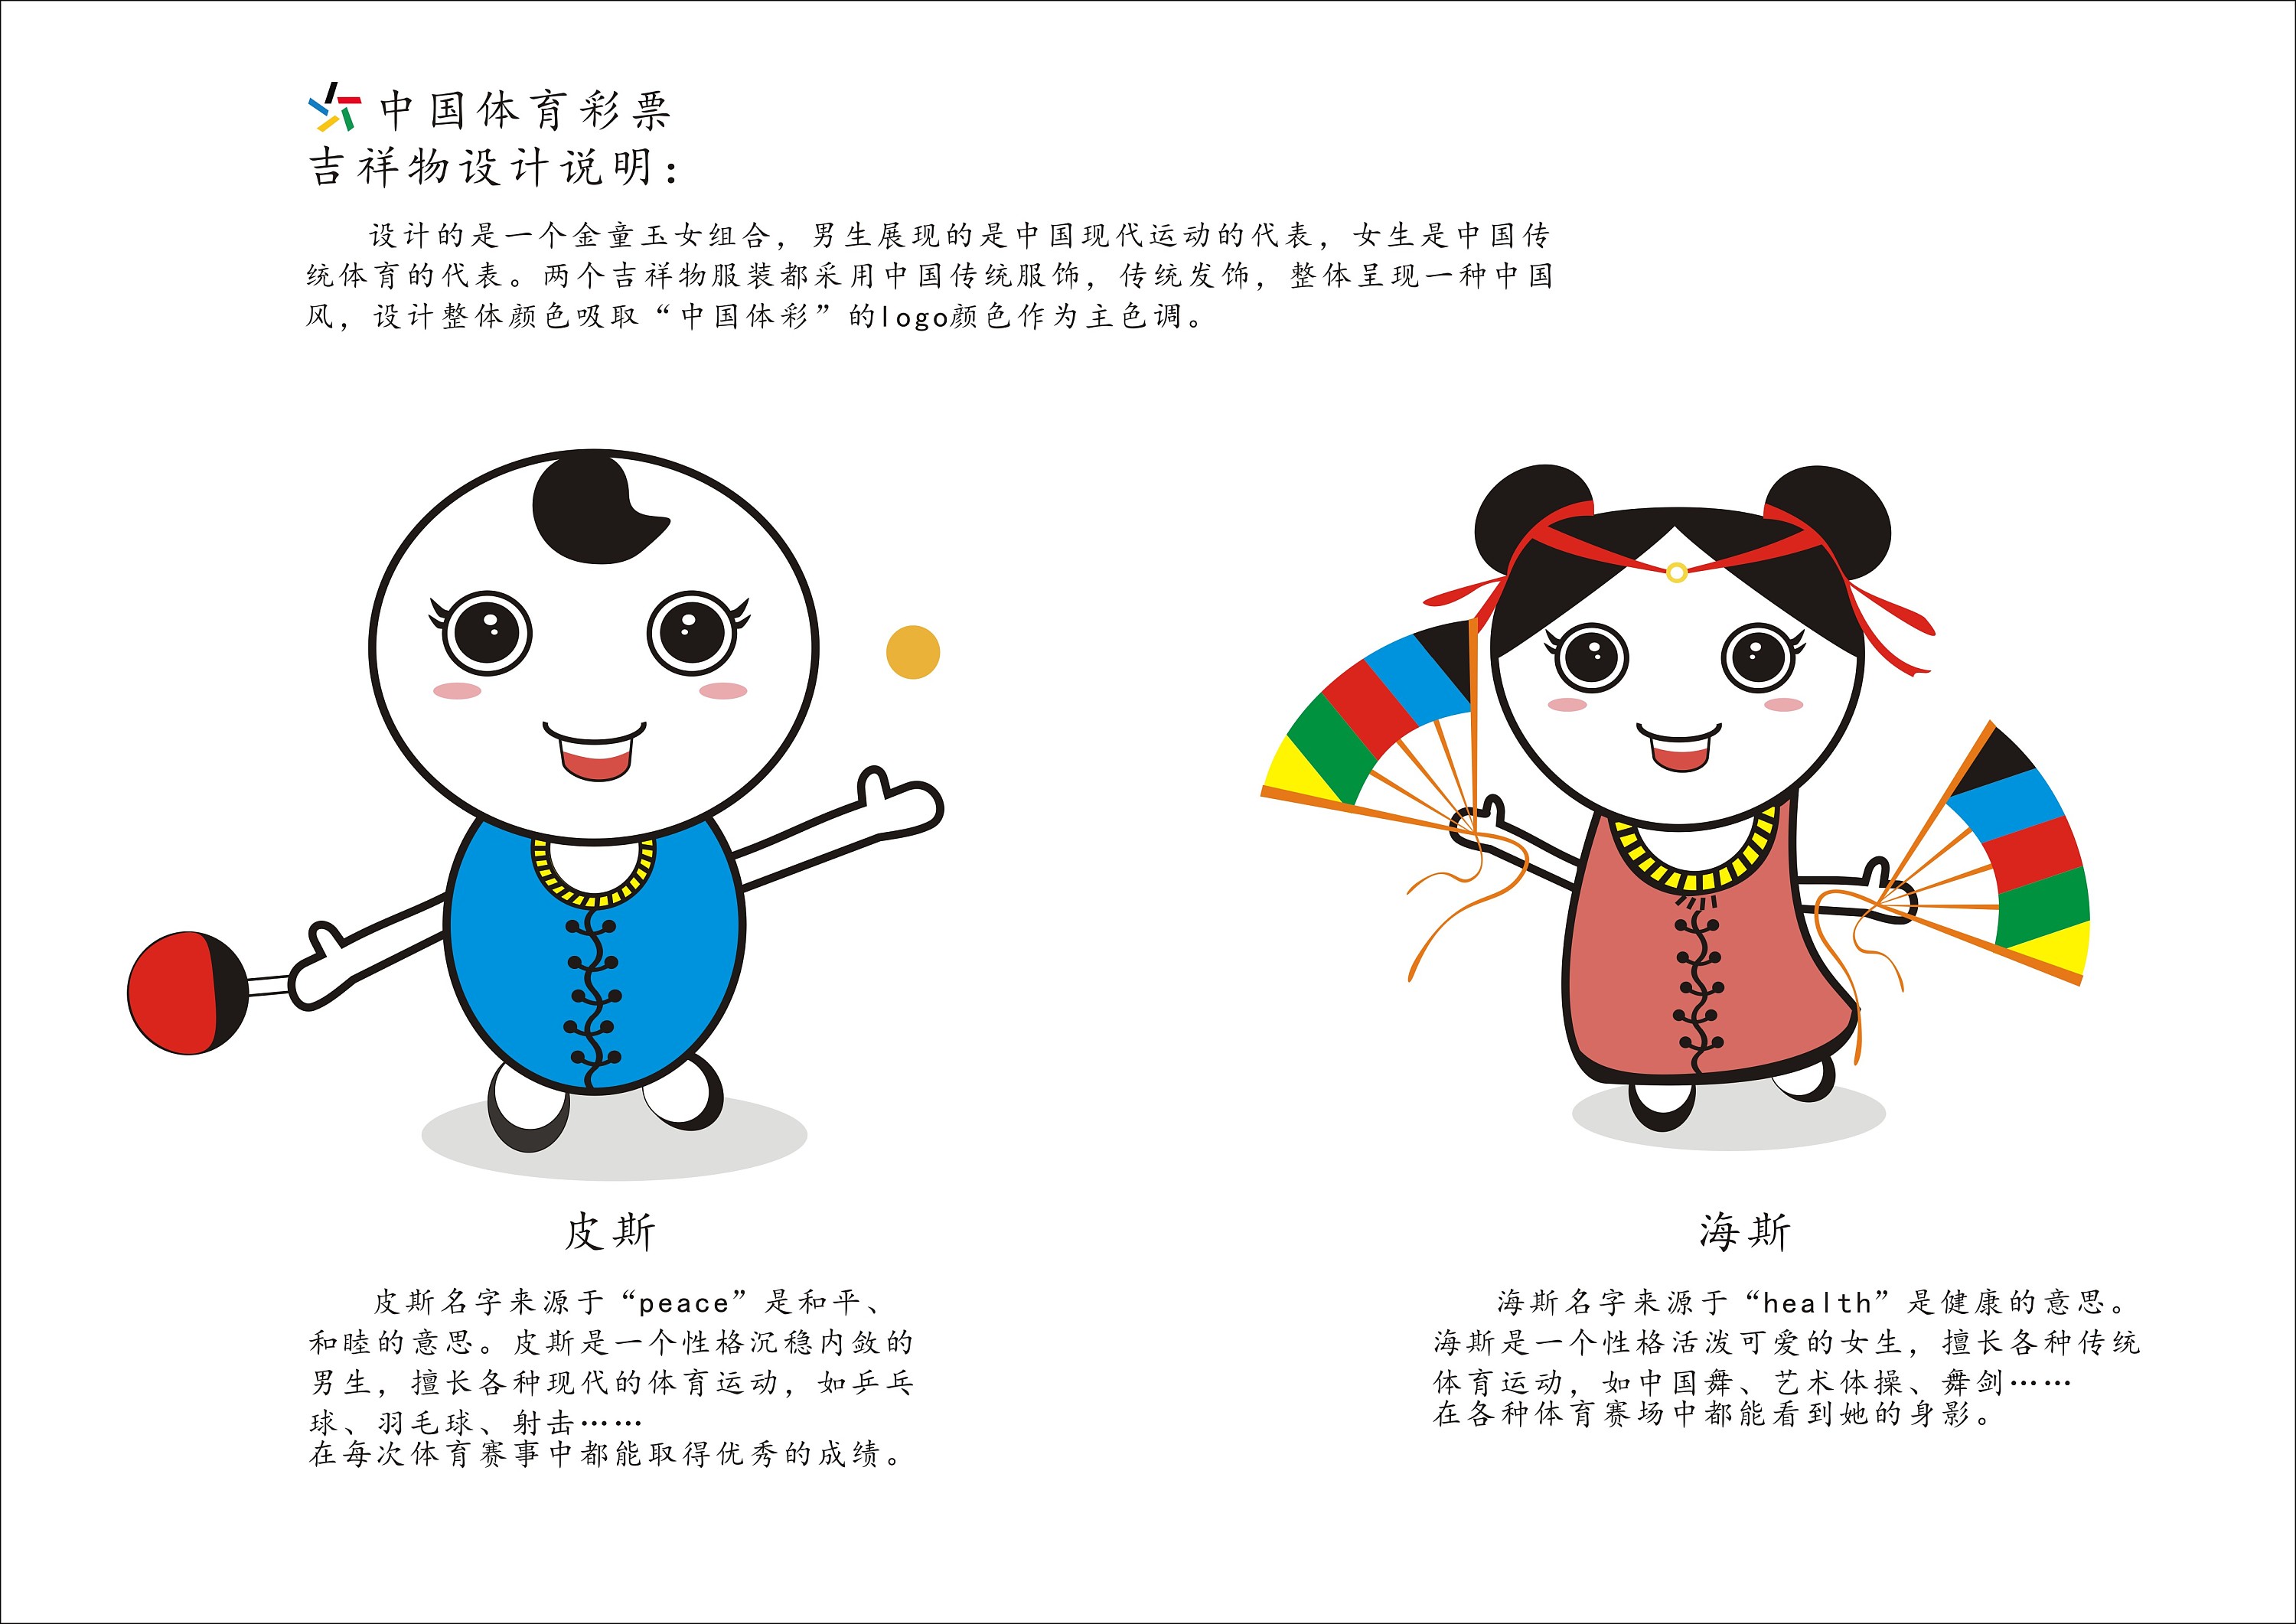 中国体育彩票吉祥物设计——皮斯和海斯的体彩世界